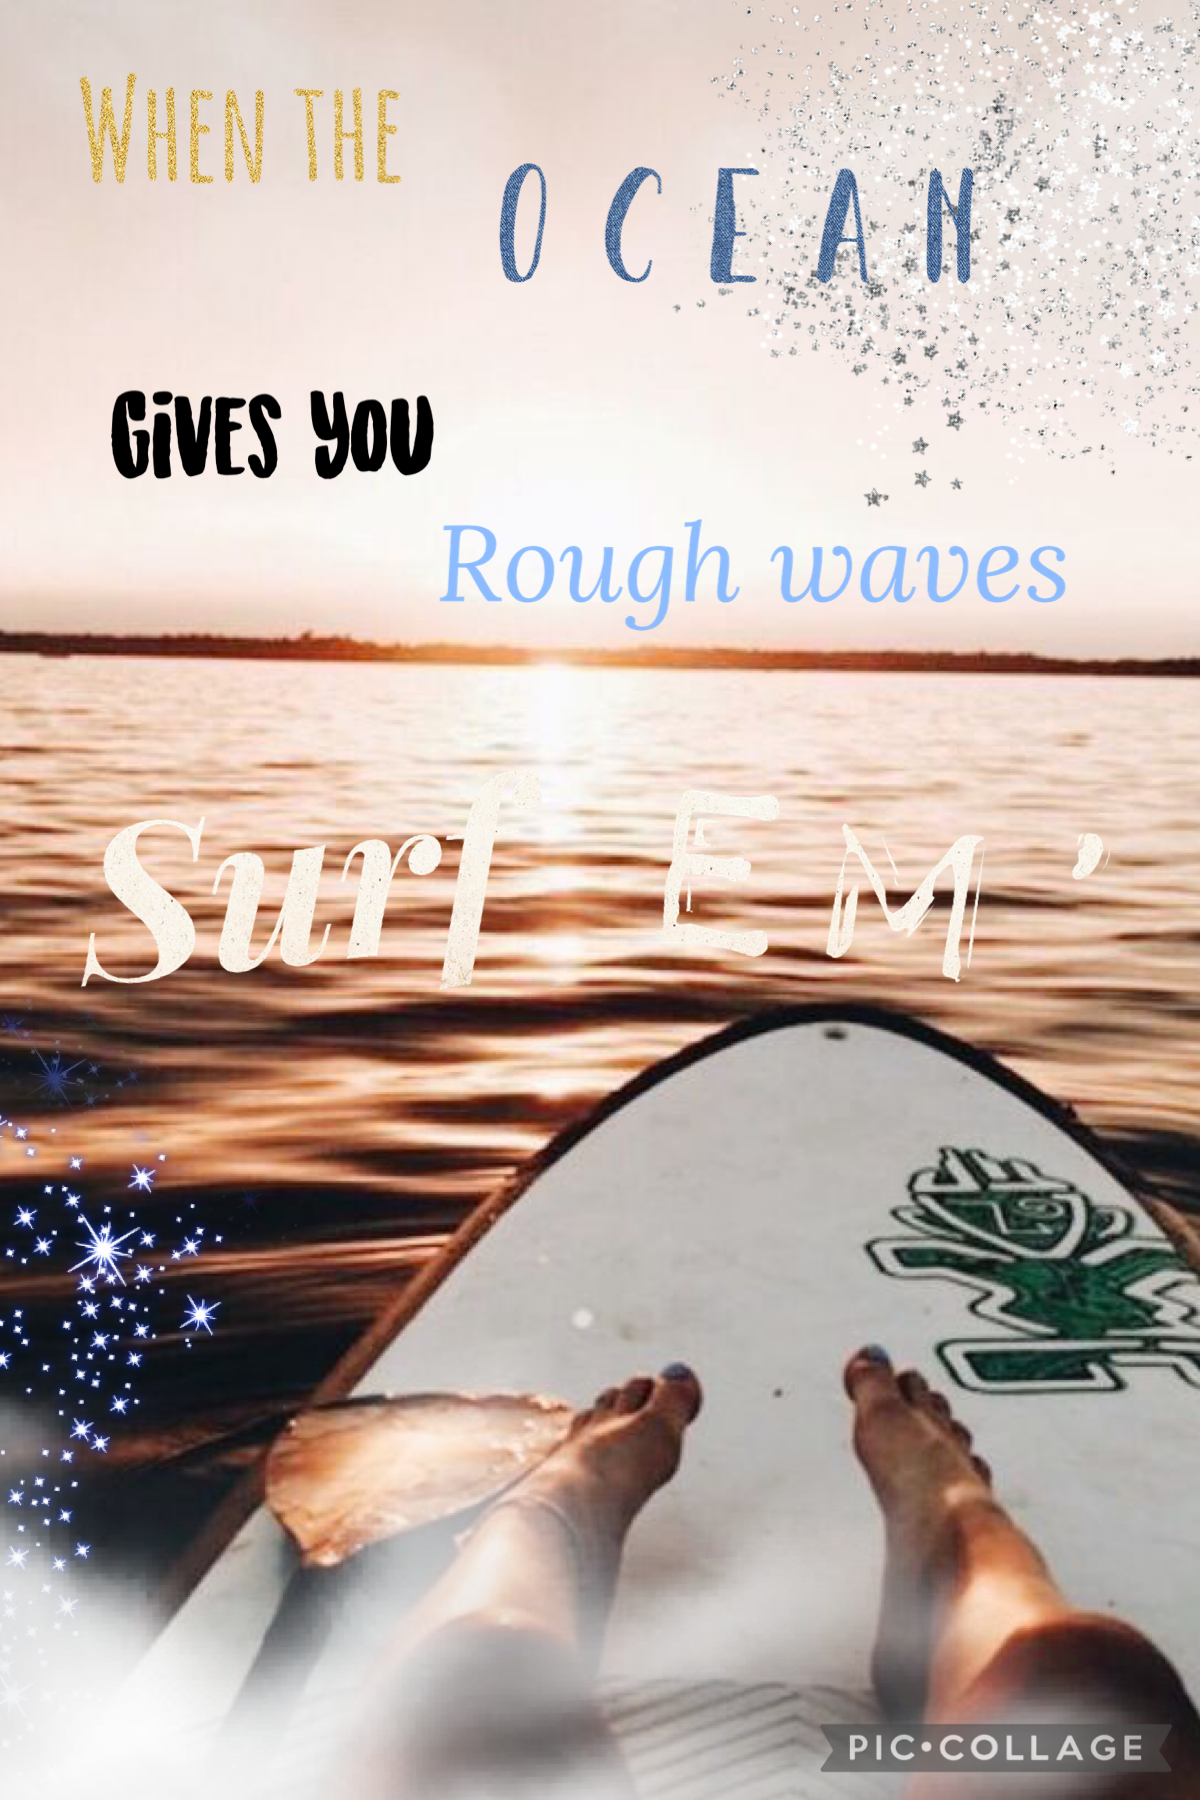 ~surf em’~